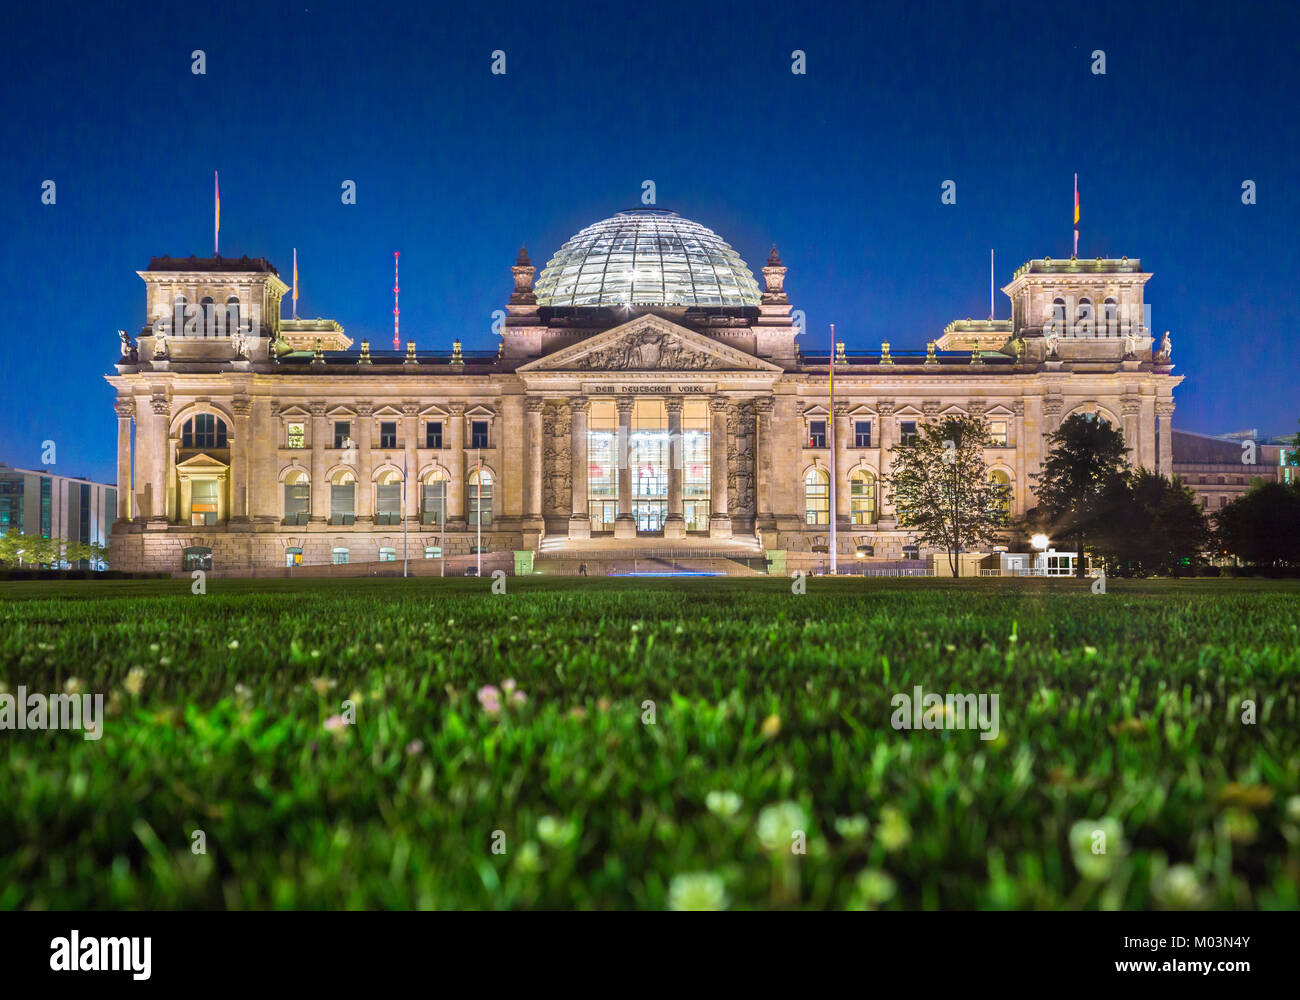 Panoramablick auf den berühmten Reichstag, Sitz des deutschen Parlaments (Deutscher Bundestag), in der Dämmerung während der Blauen Stunde in der Dämmerung, Berlin, Deutschland Stockfoto